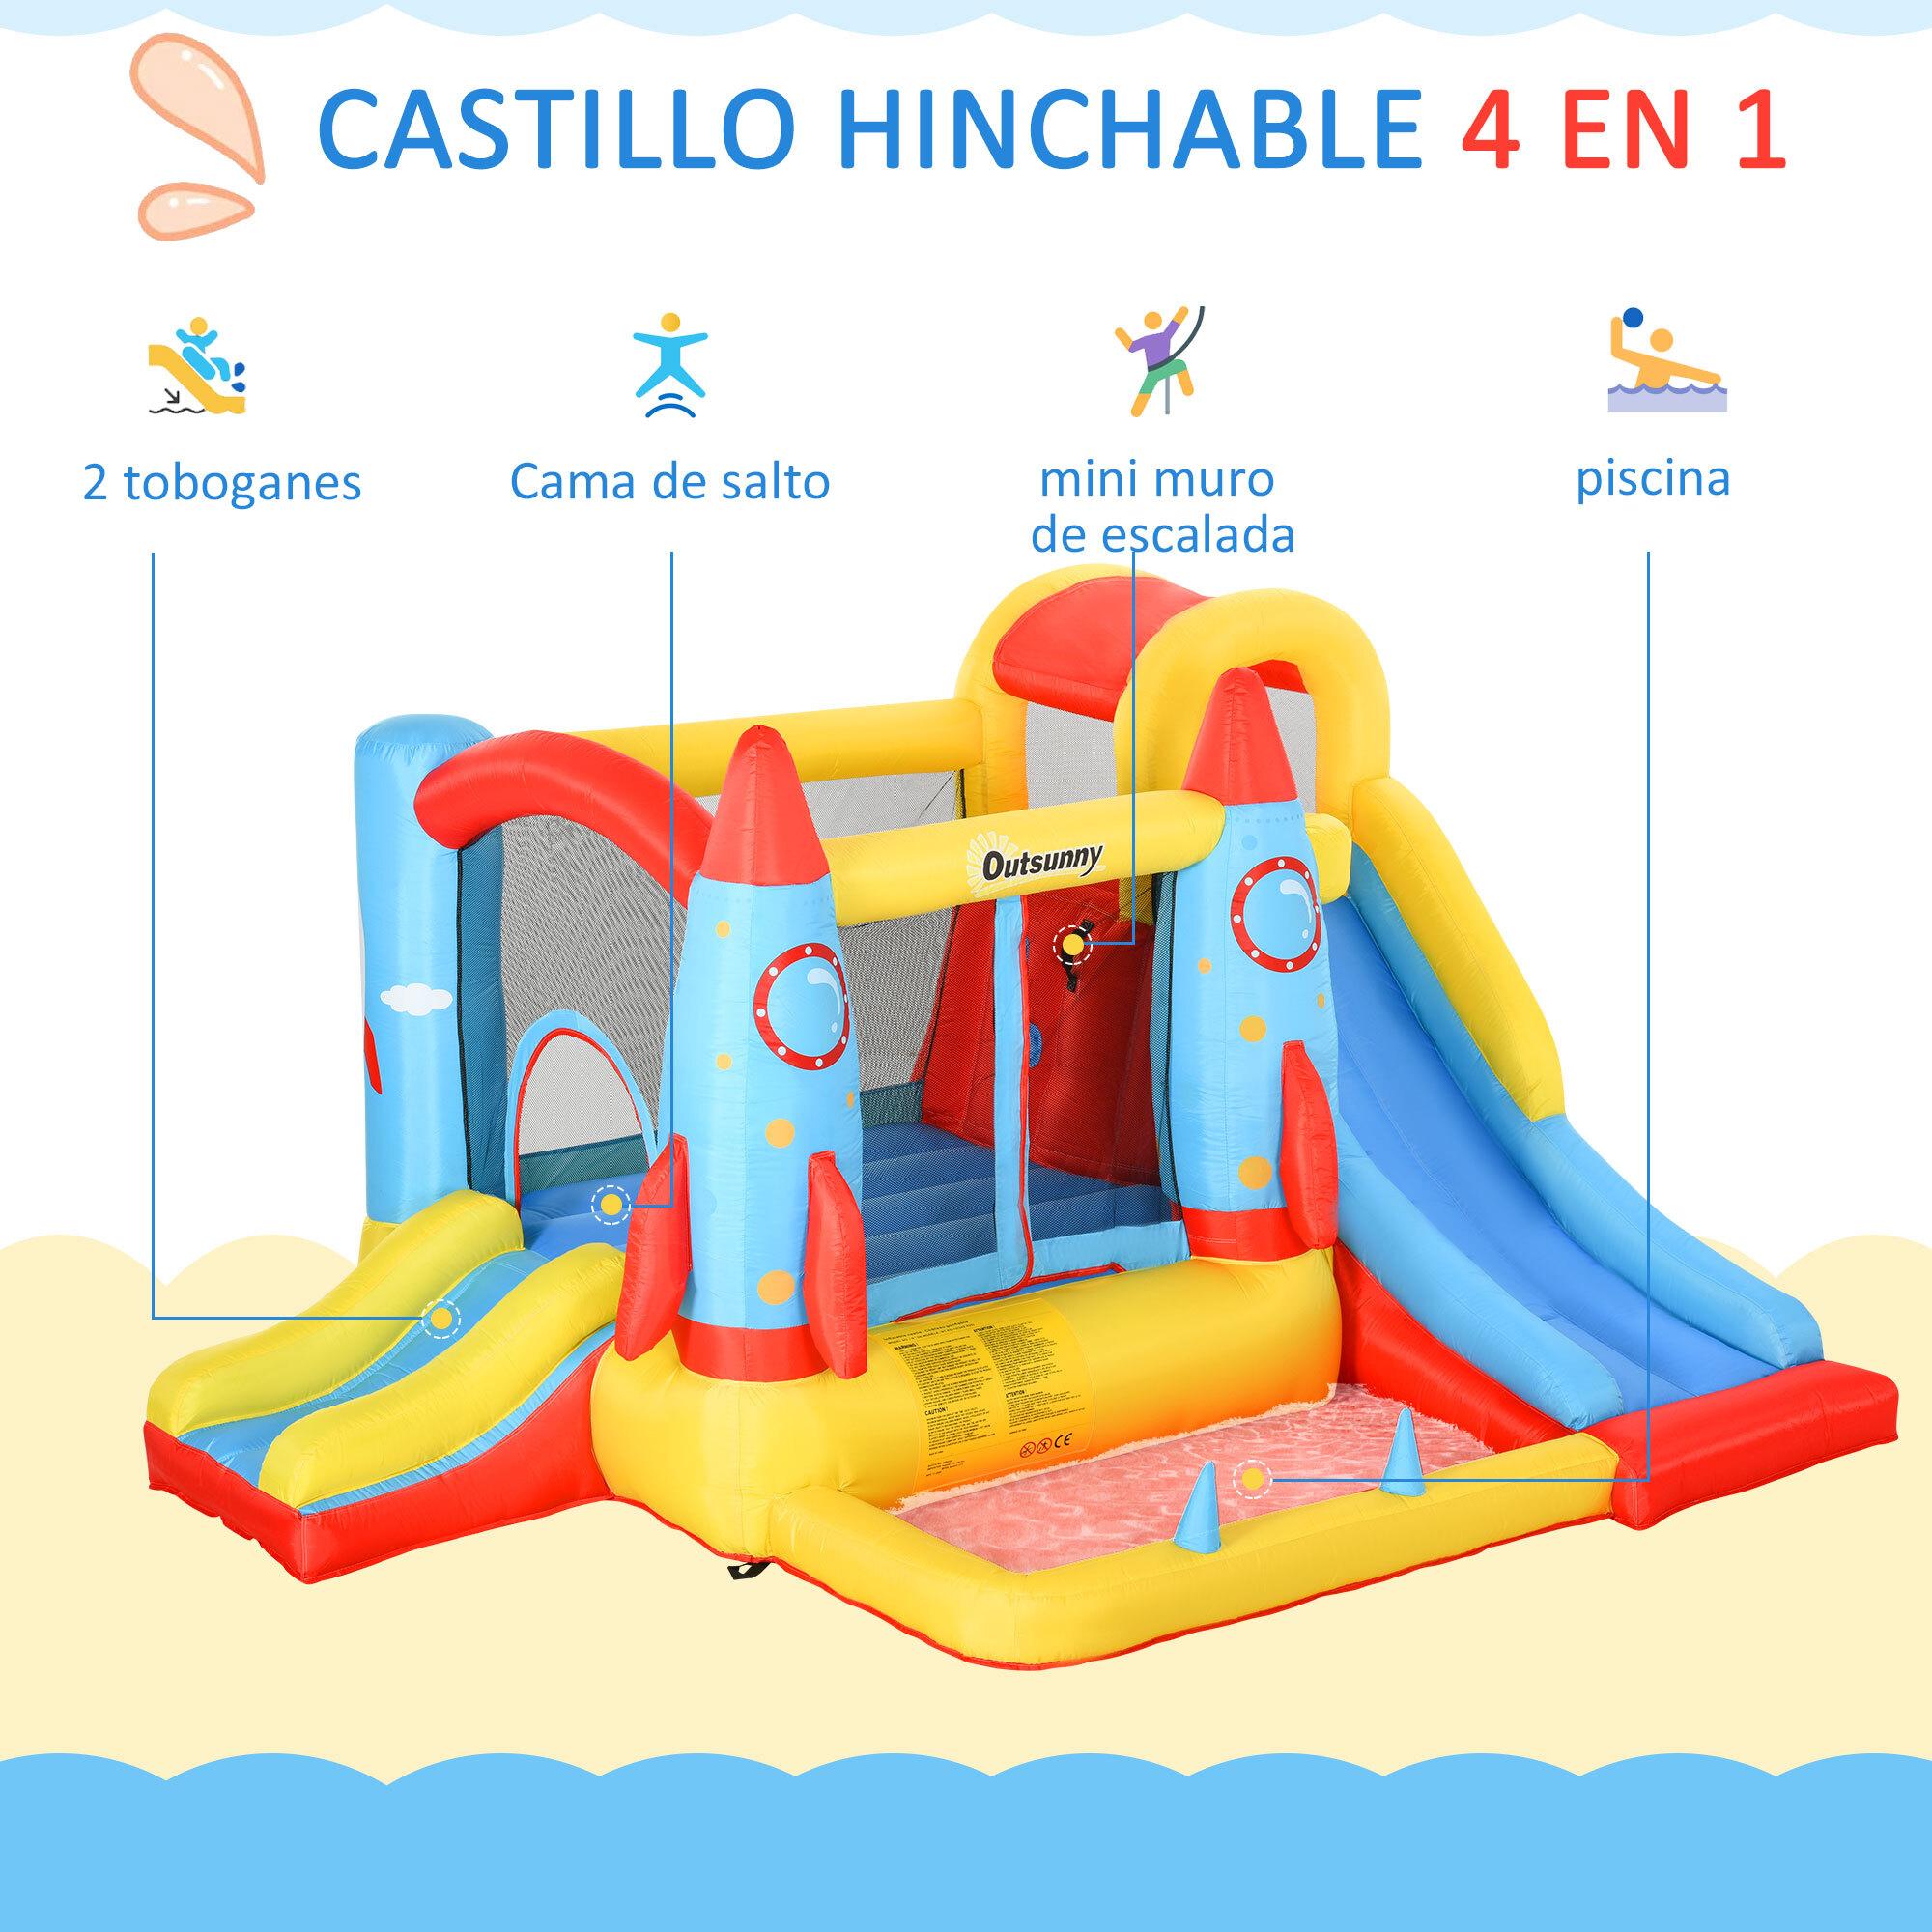 Castillo Hinchable con 2 Toboganes Cama de Salto y Piscina para Niños +3 Años con Inflador y Bolsa de Transporte para Interior Exterior 330x265x185 cm Multicolor